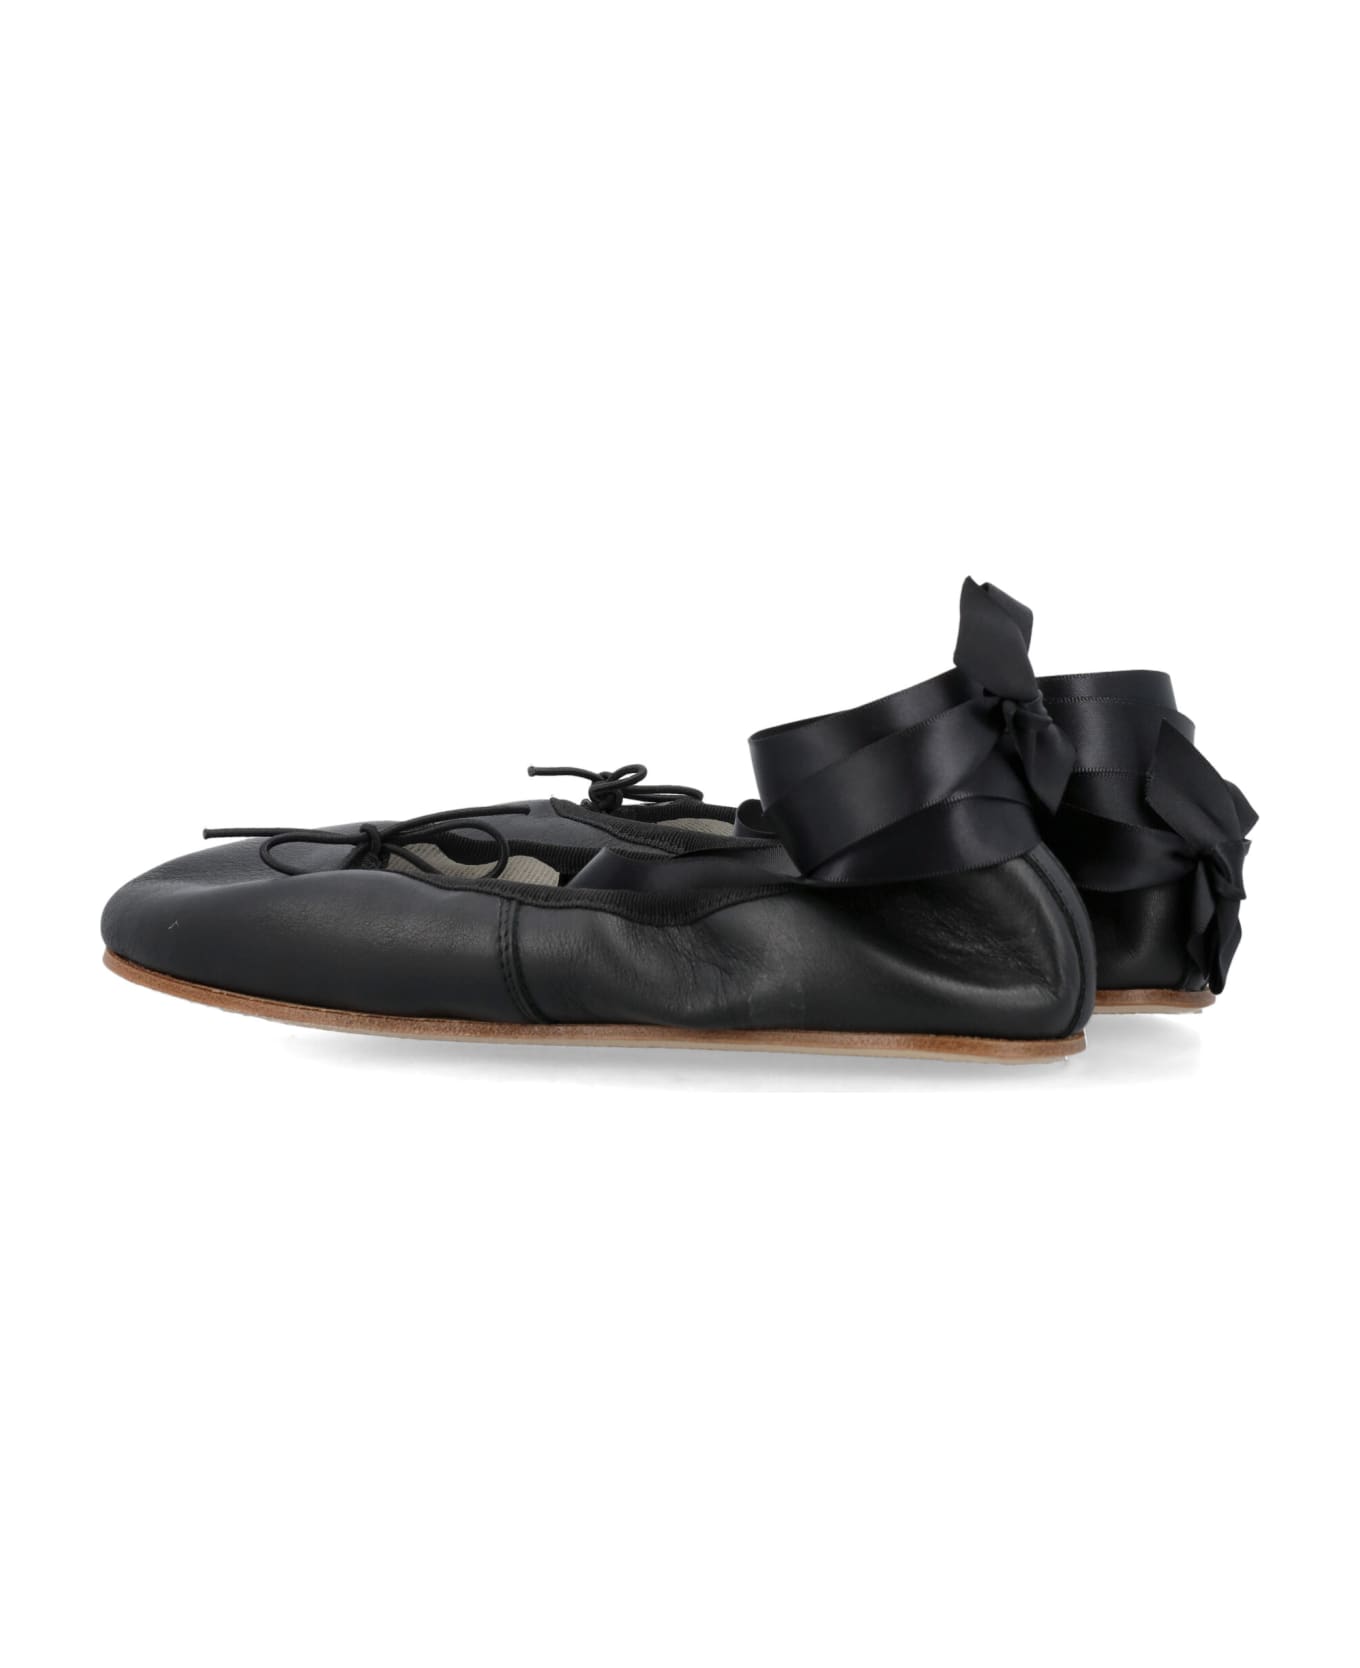 Repetto Sophia Ballerina Shoes - Black フラットシューズ